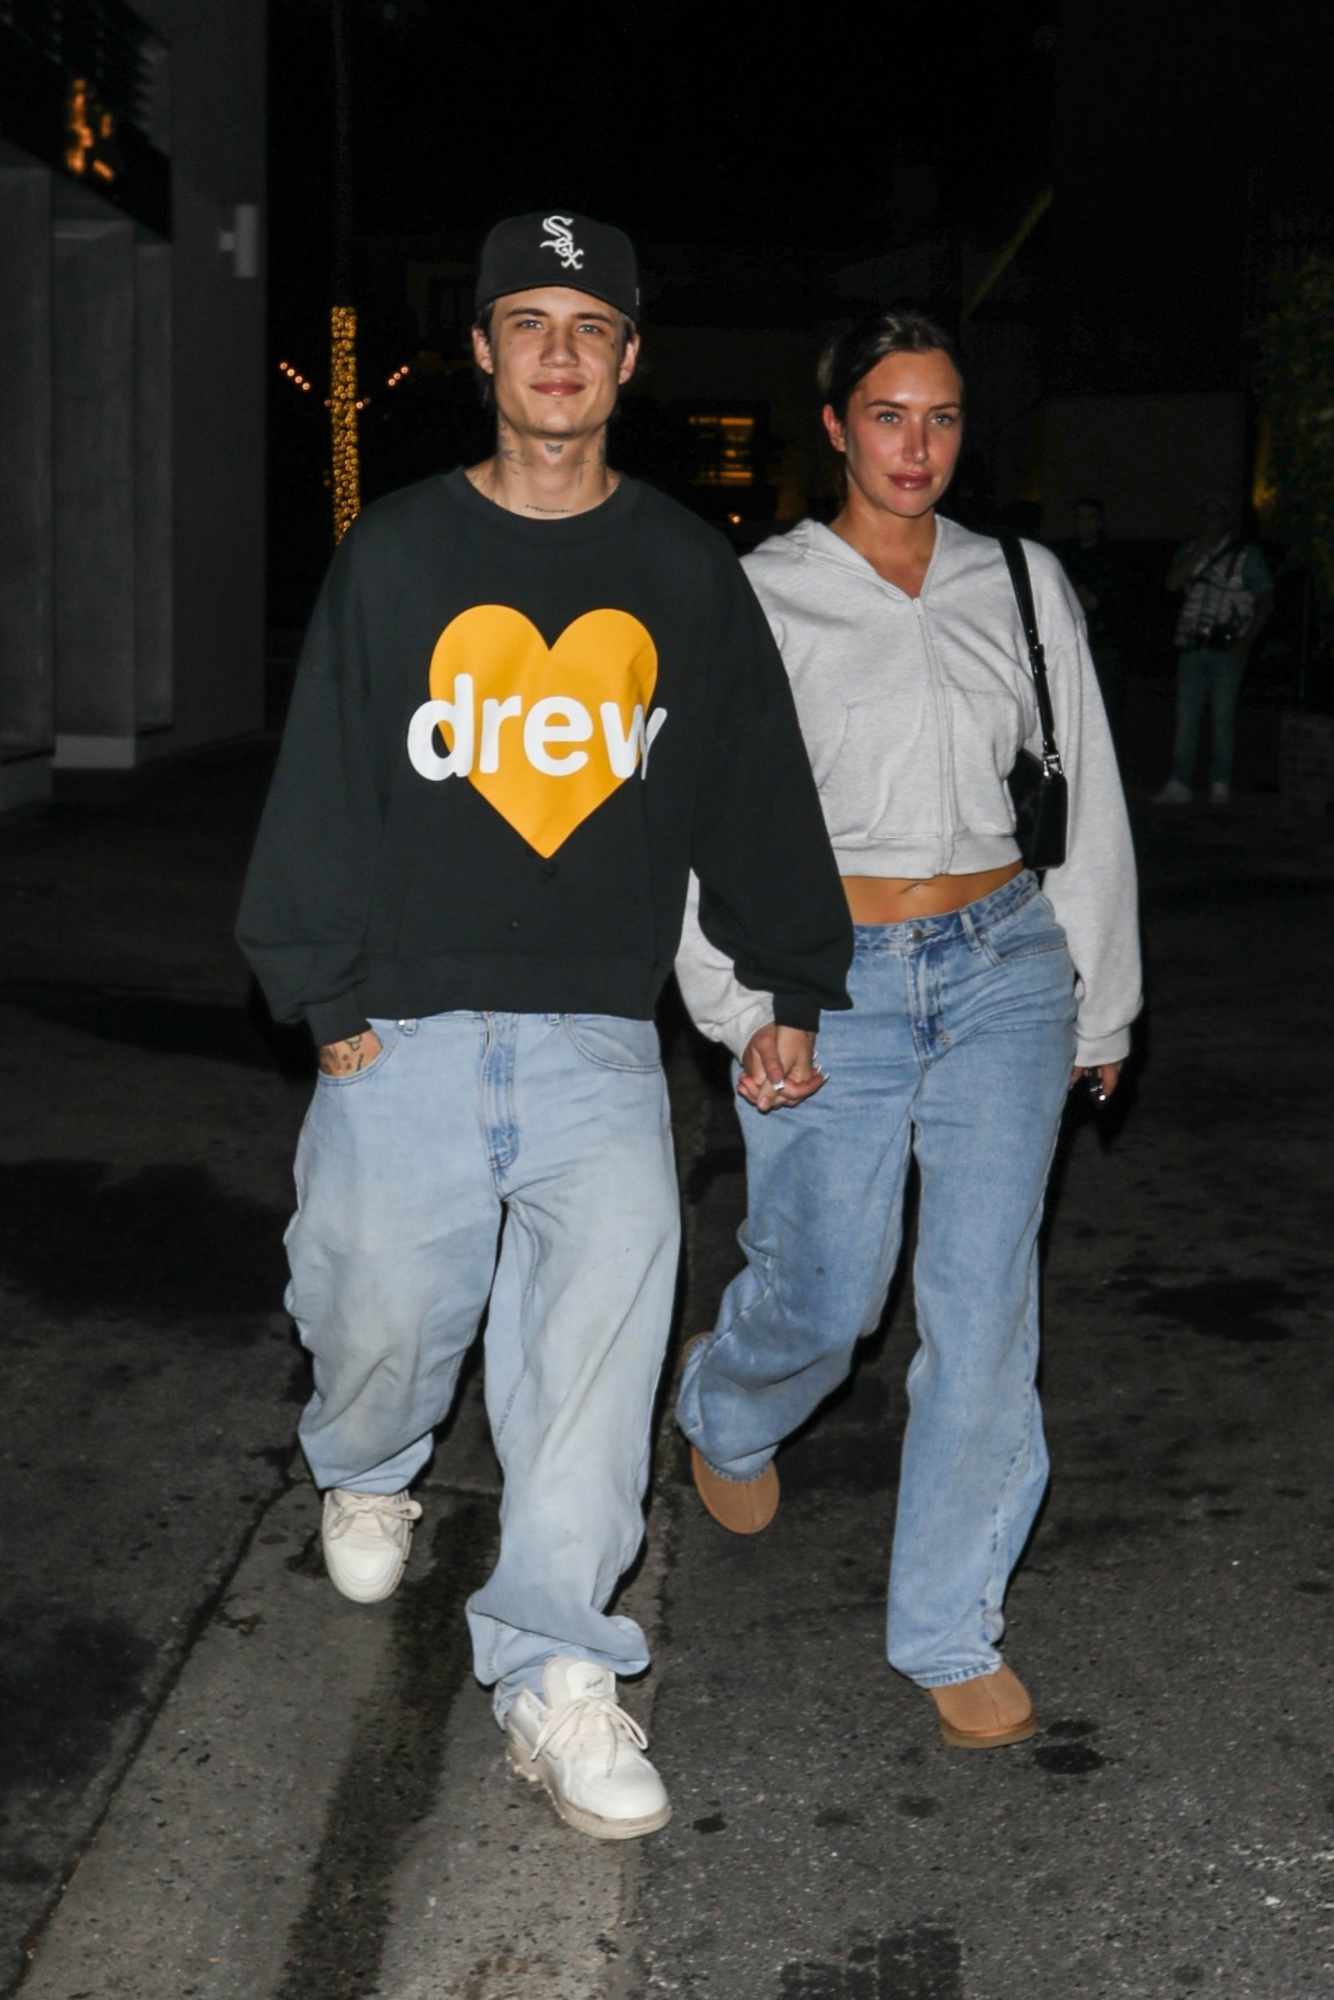 Stassie & boyfriendJaden Hossler wearing Drew House merch out at night to meet Justin & Hailey Bieber